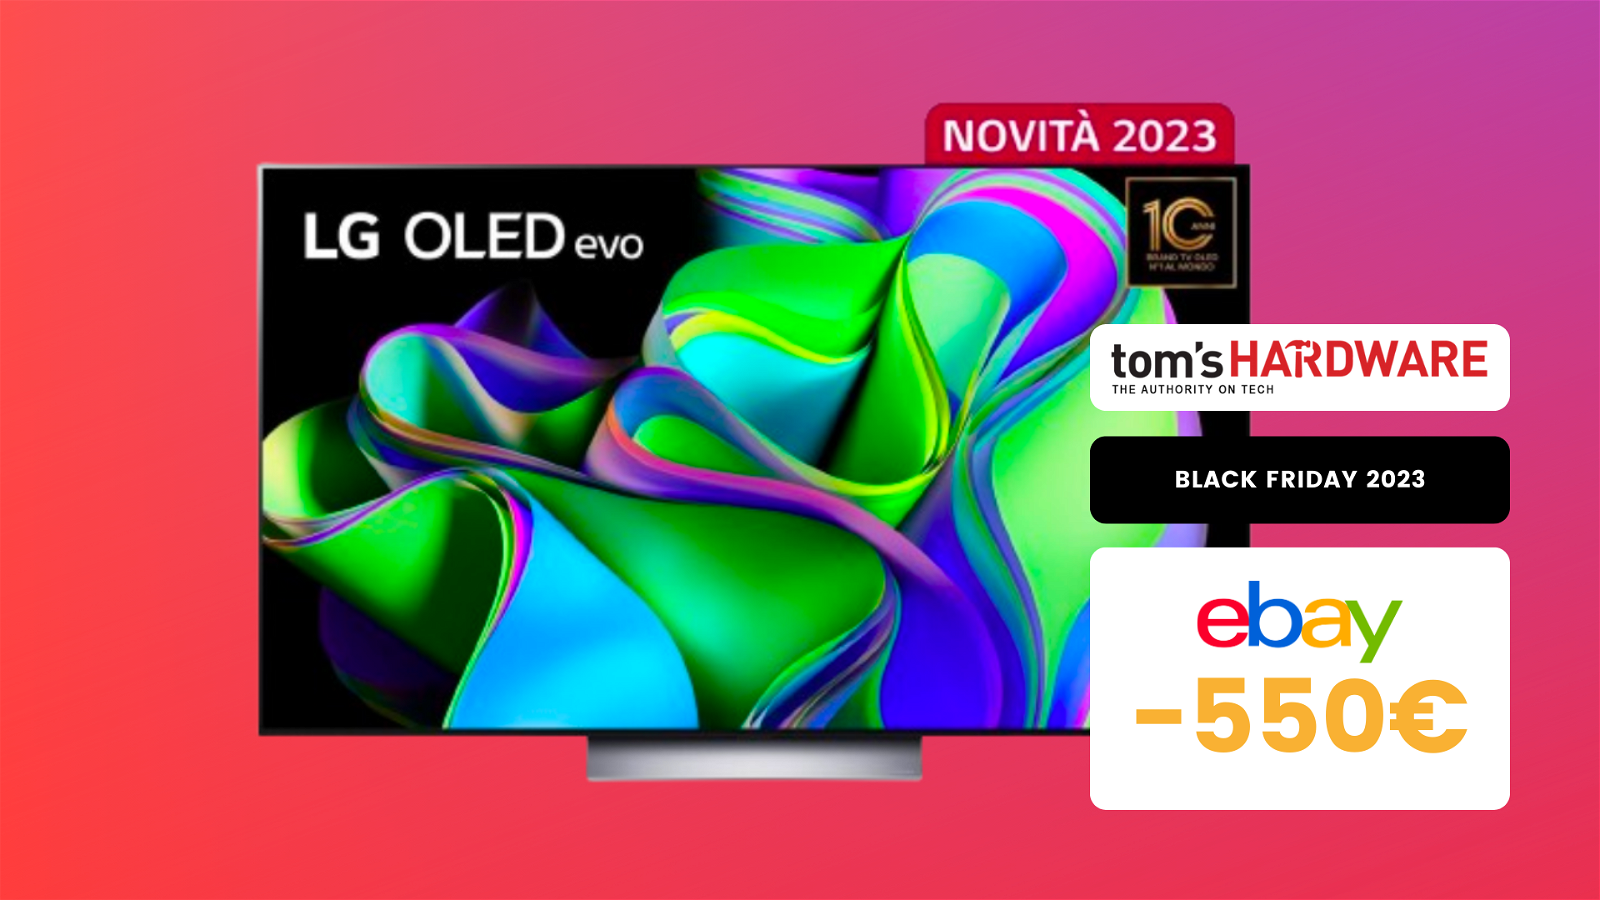 Immagine di Questo TV OLED LG Evo da 55" è un AFFARE a questo prezzo! (-550€)